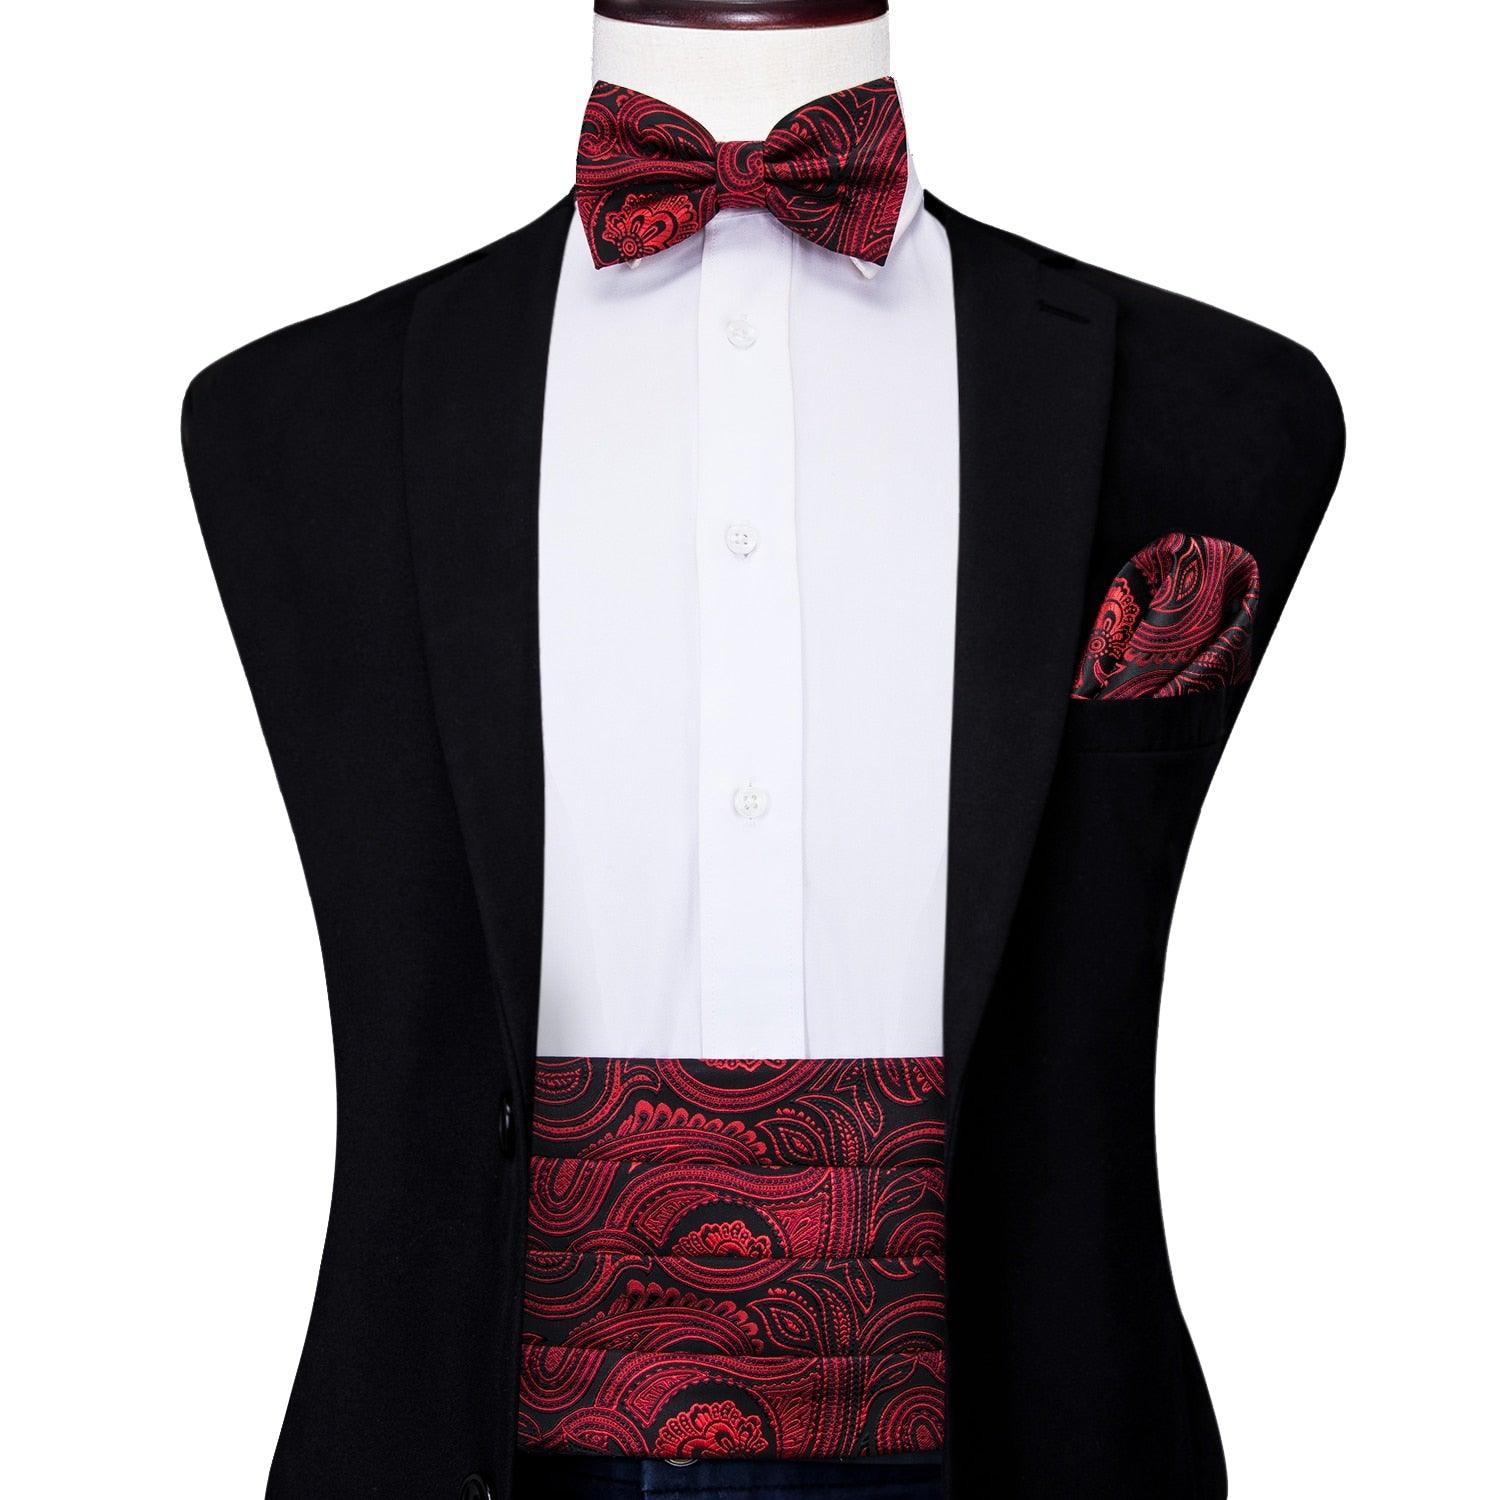 Men's Accessories - Ties Paisley Red Cummerbund Bow Tie Set Formal Tuxedo Corset Elastic Belt For Men